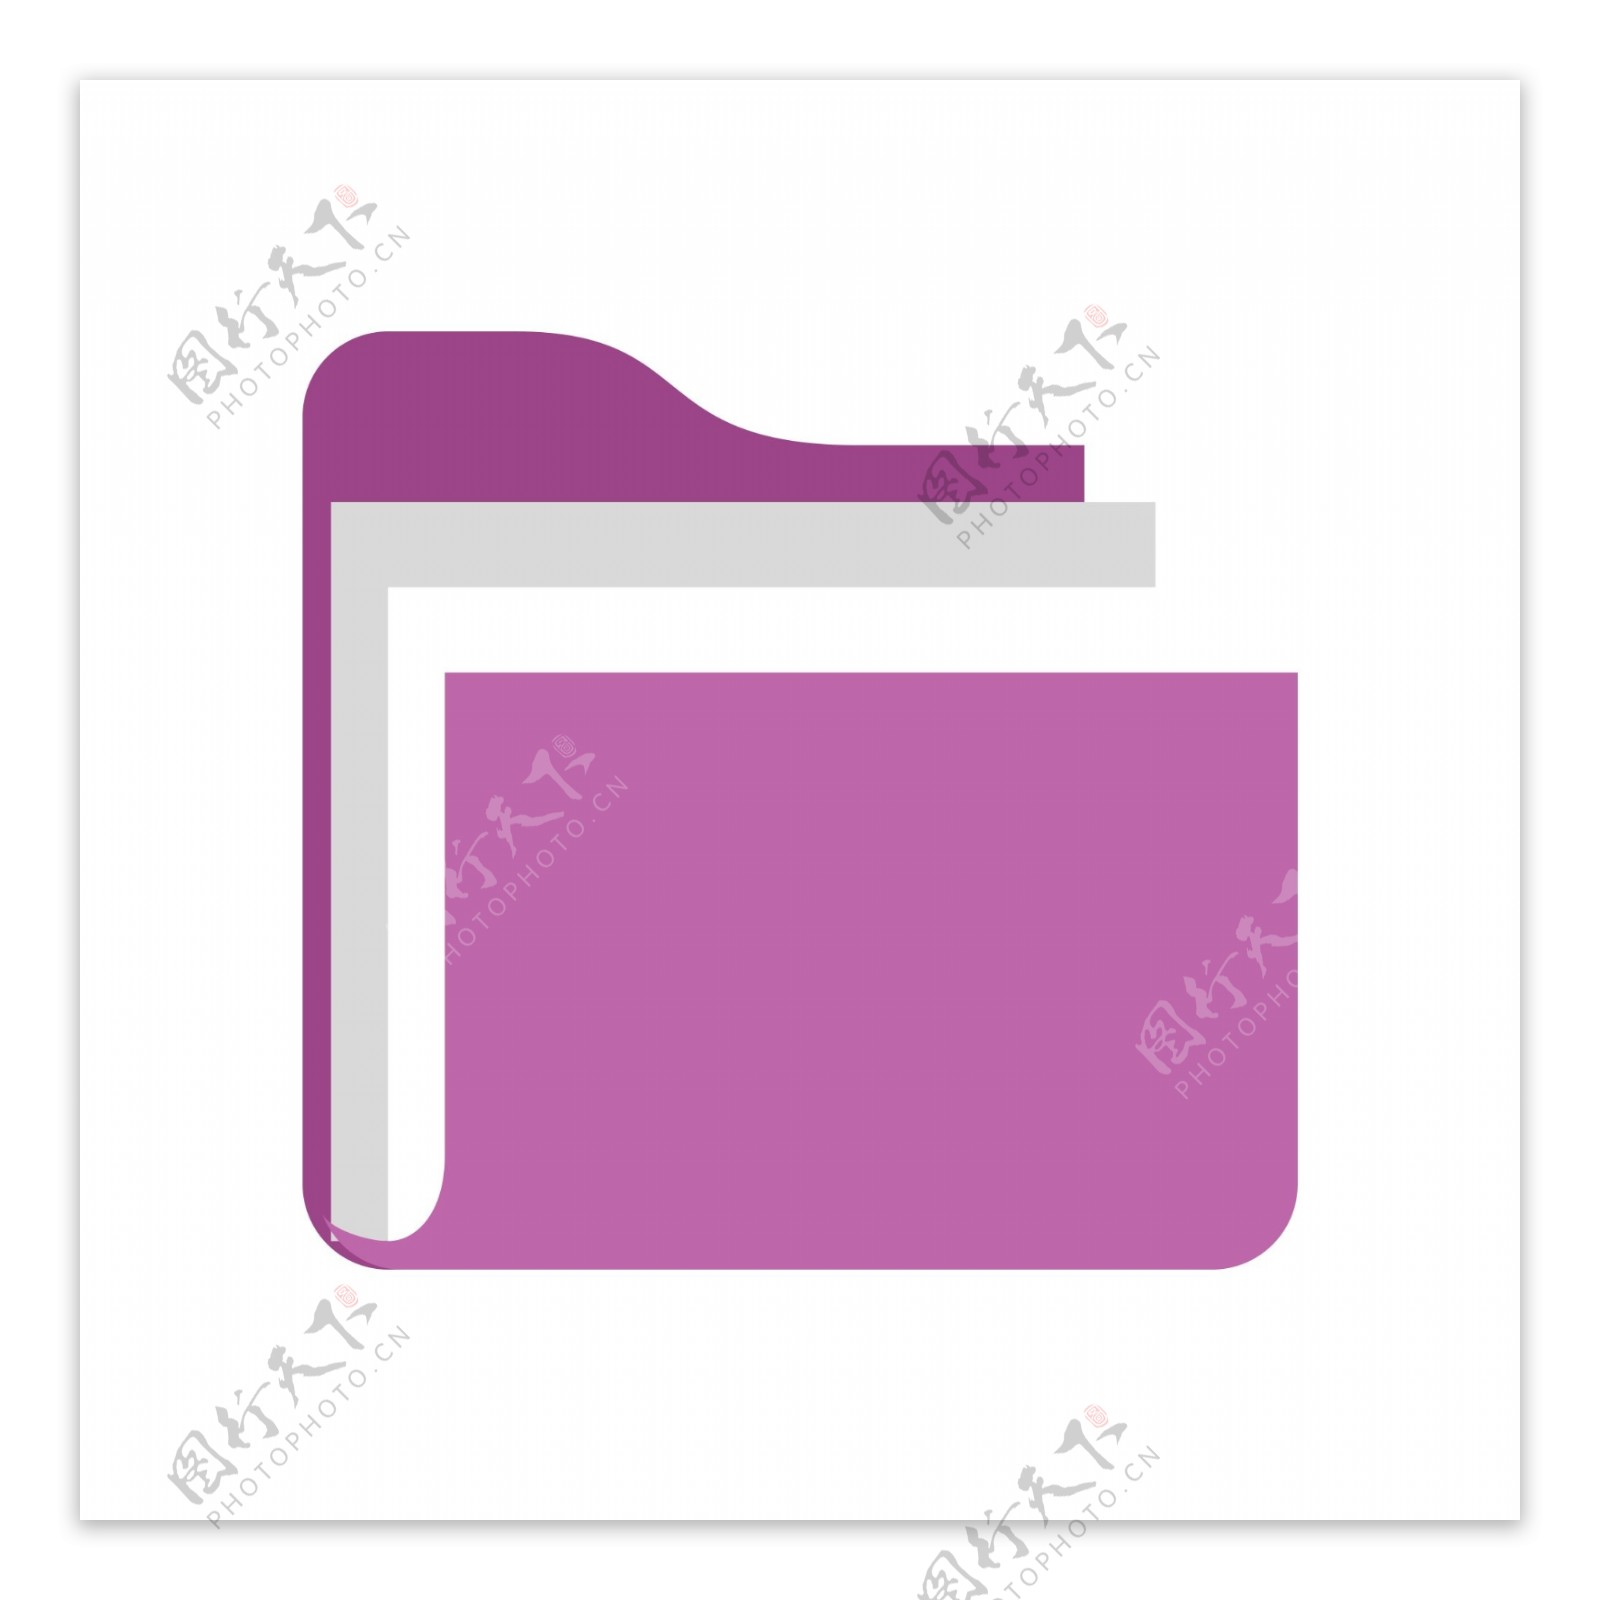 紫色文件夹图标素材